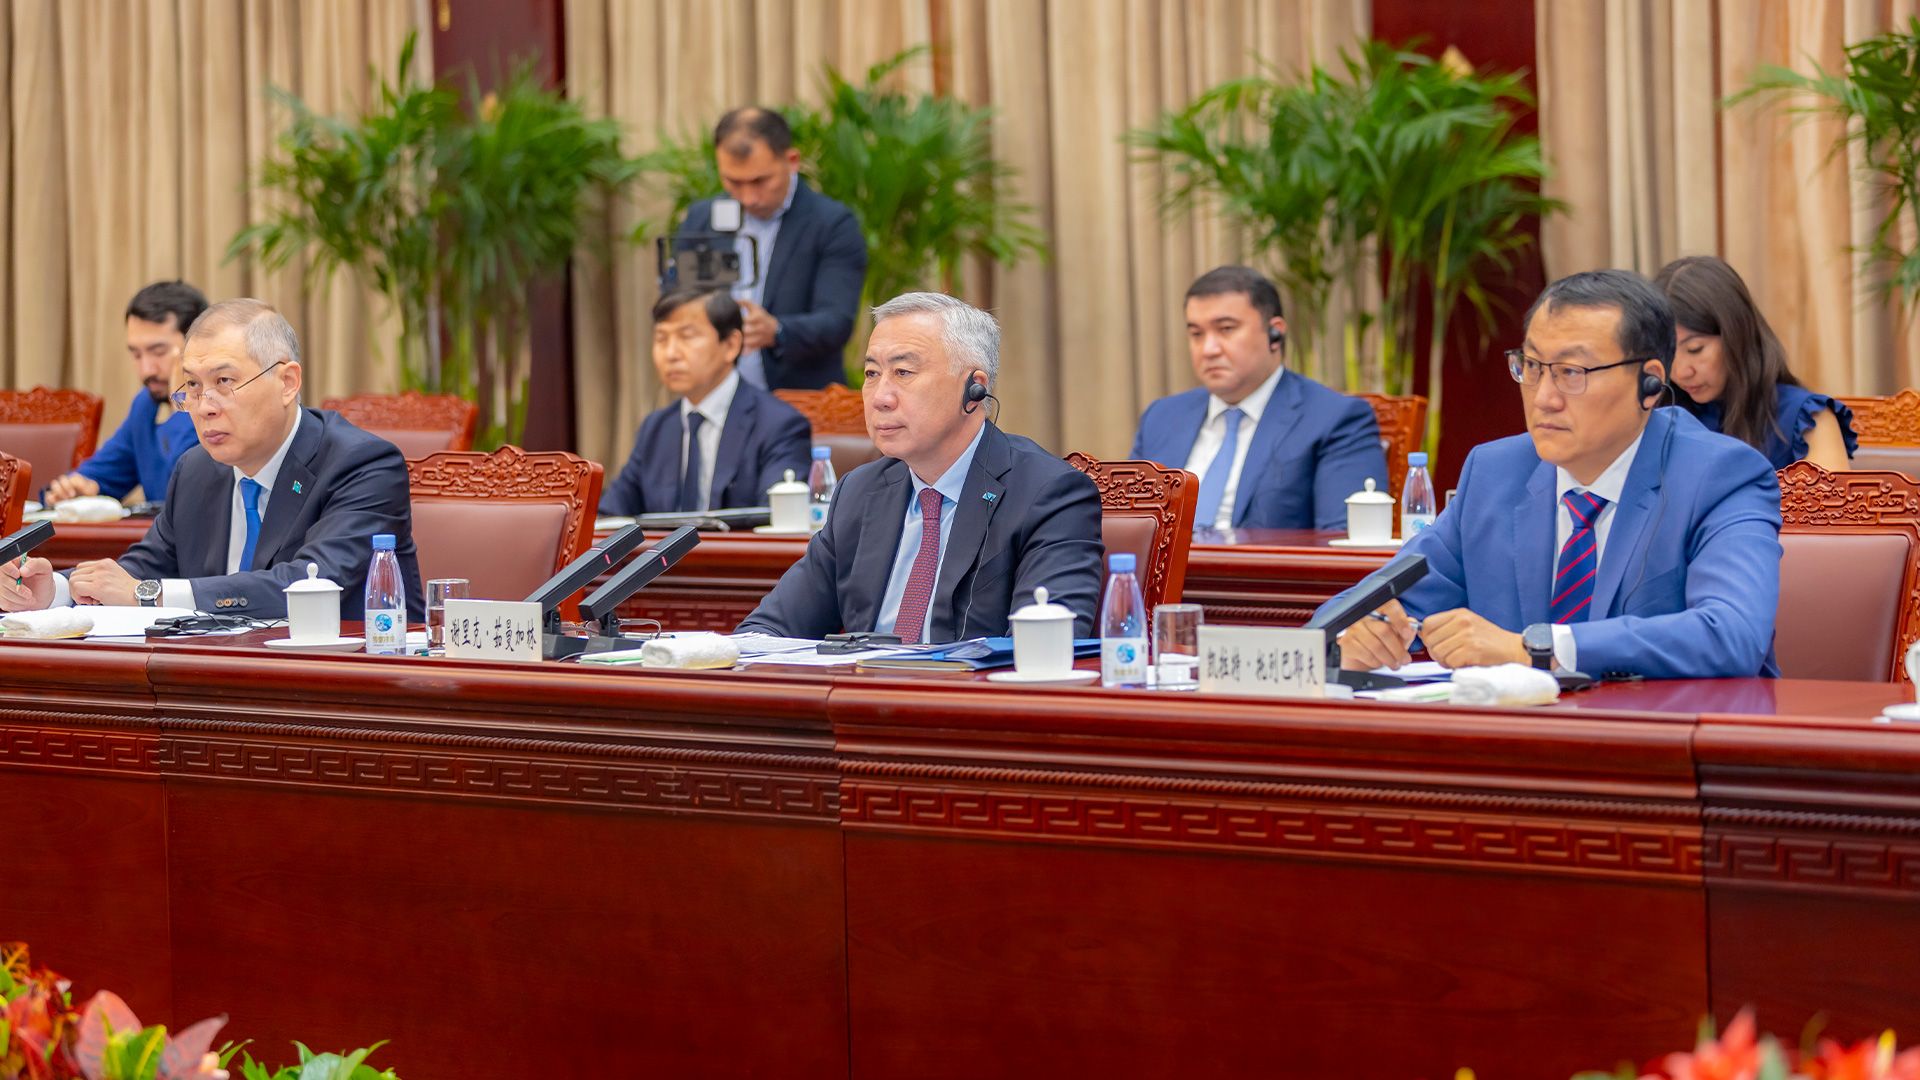 СУАР КНР предлагает Казахстану сотрудничество с крупными предприятиями Гонконга и Макао 3116109 — Kapital.kz 